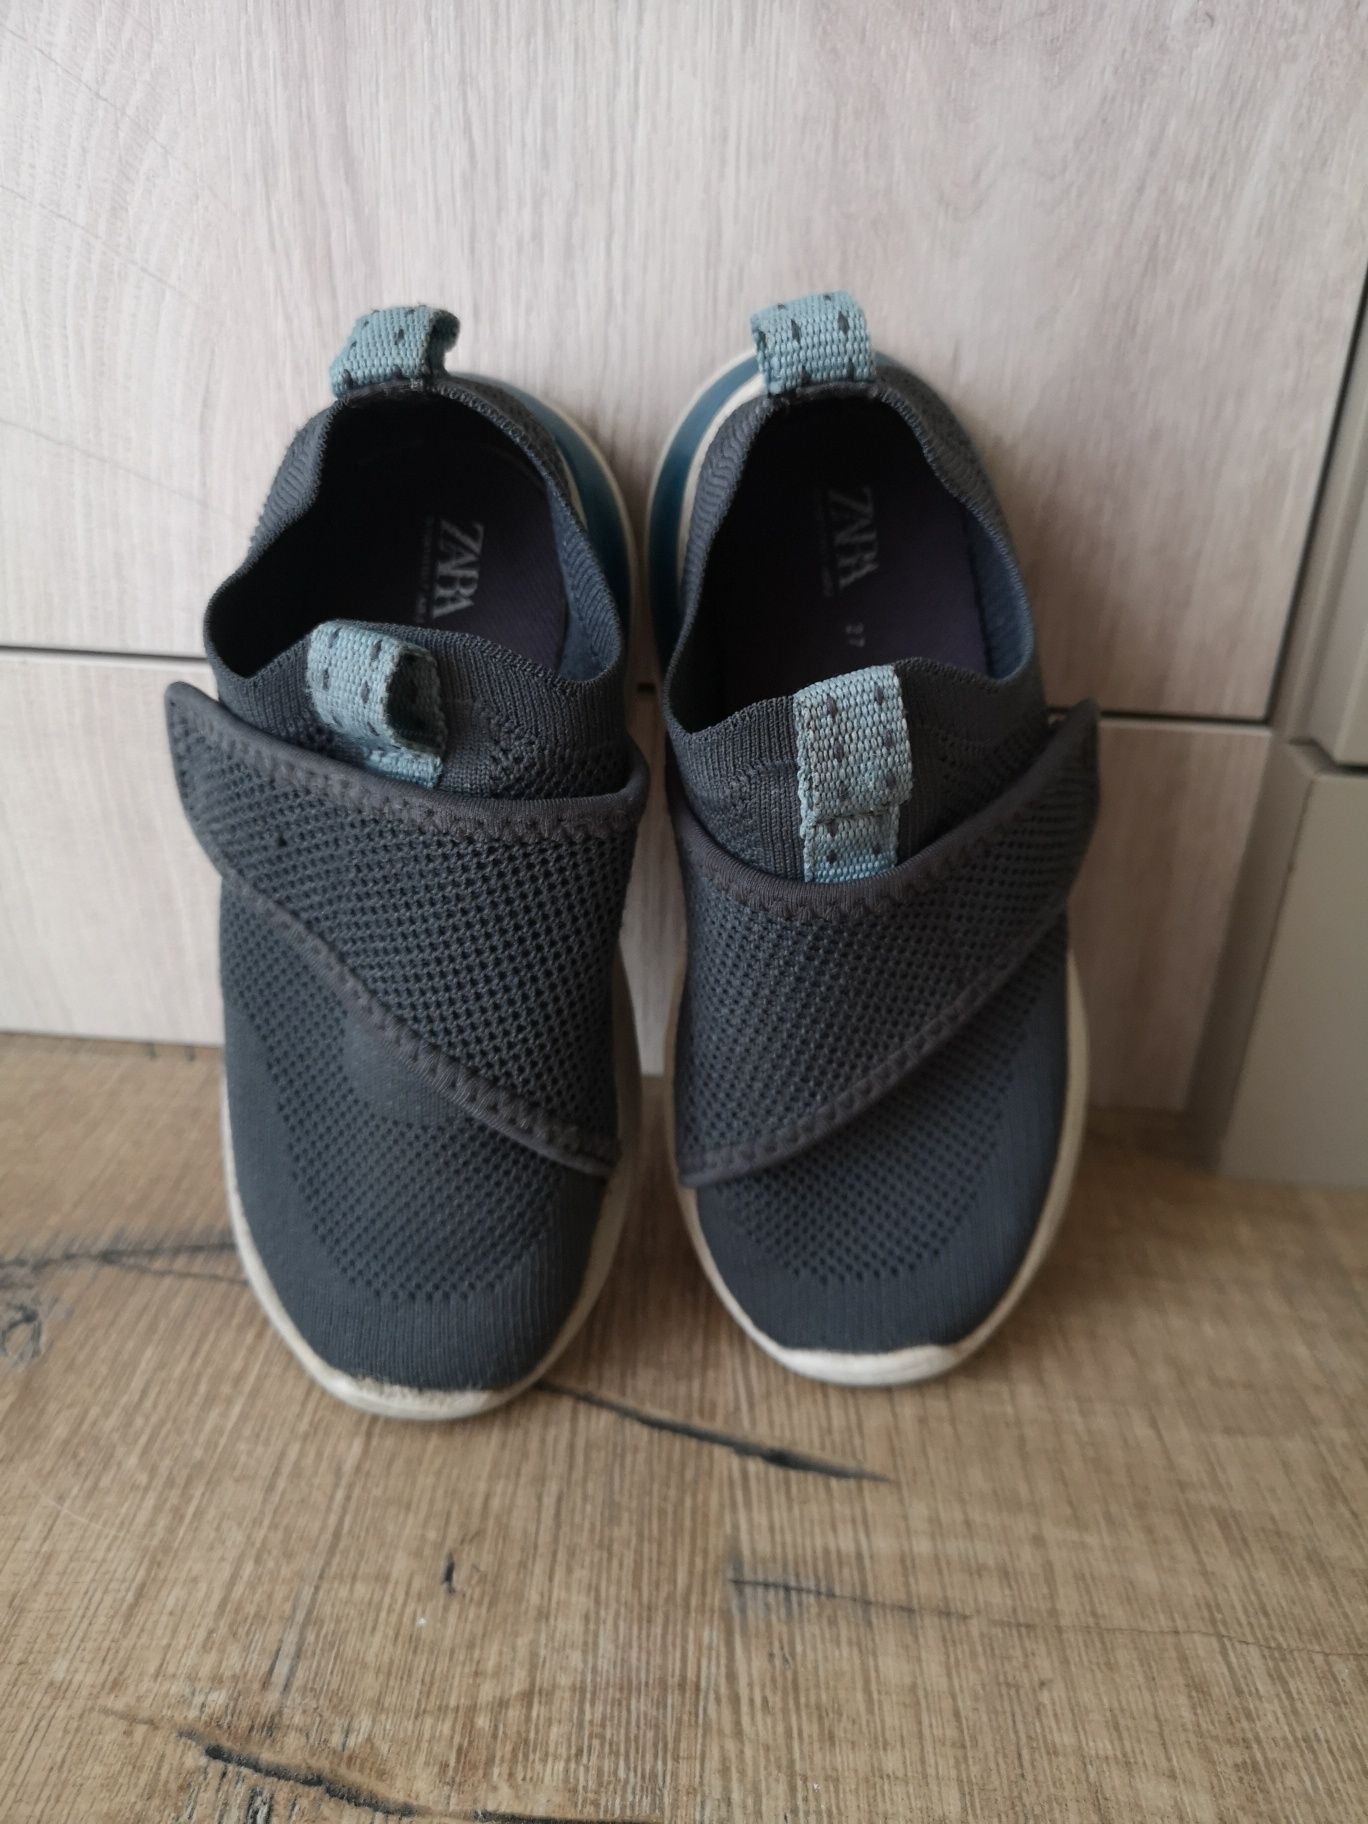 Детски обувки - Зара, Пума